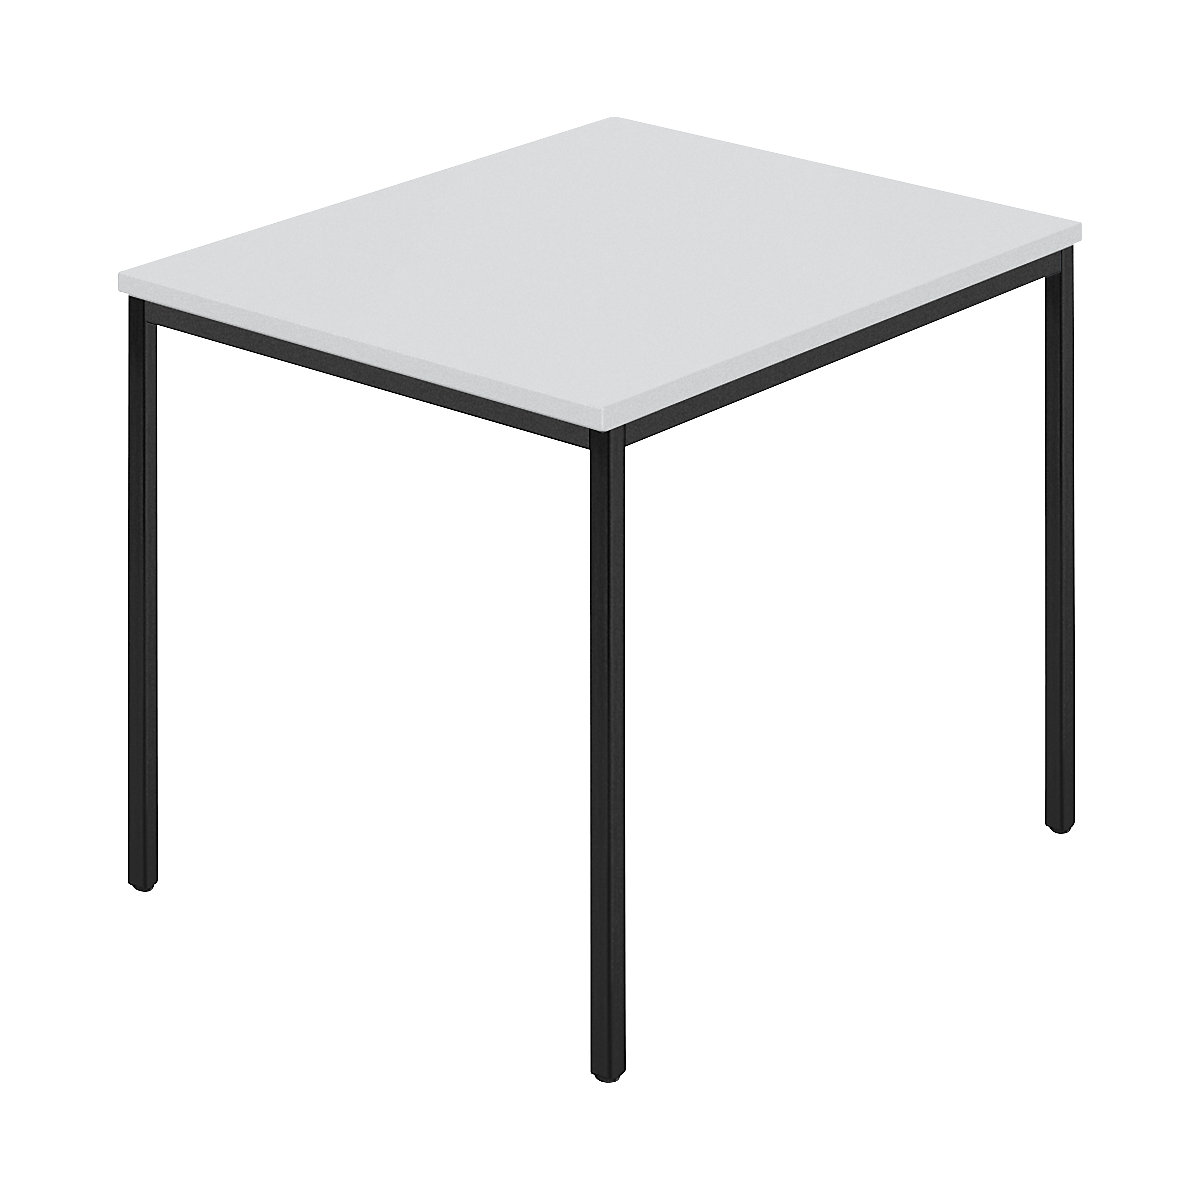 Table rectangulaire, tube carré plastifié, l x p 800 x 800 mm, gris / anthracite-7